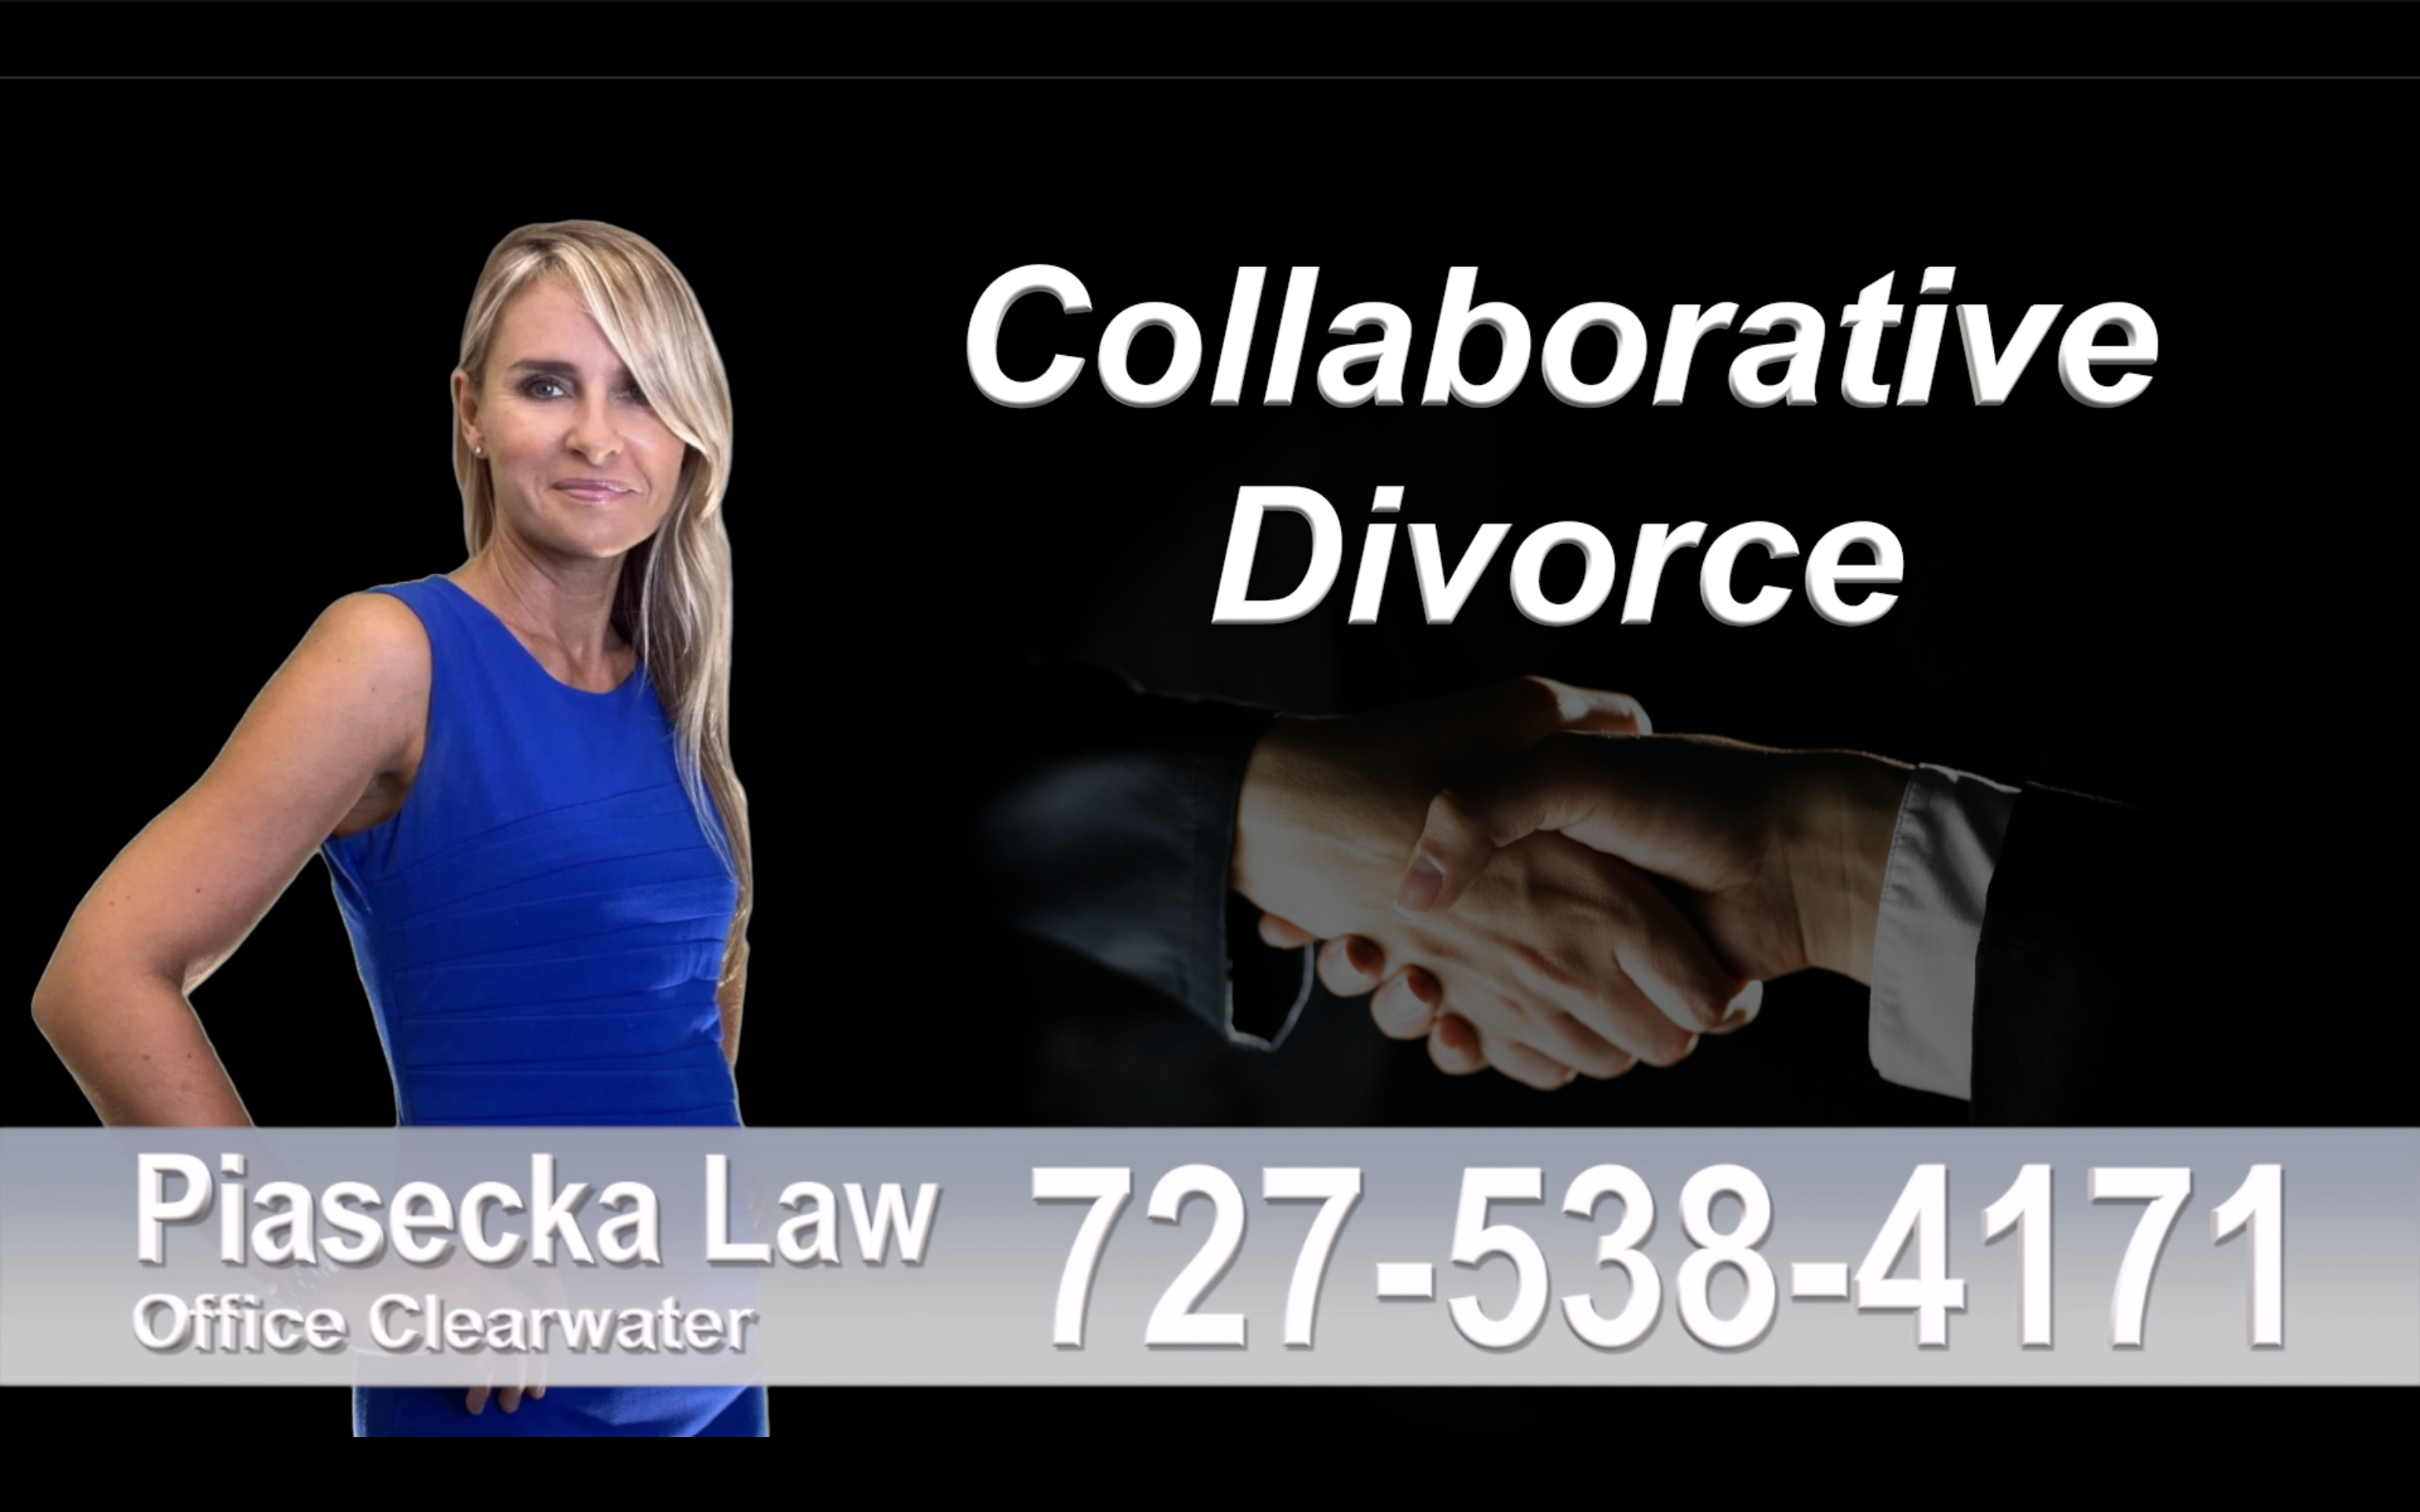 Boca Grande, Collaborative, Divorce, Attorney, Agnieszka, Piasecka, Prawnik, Rozwodowy, Rozwód, Adwokat, rozwodowy, Najlepszy, Best, Collaborative, Divorce, Attorney